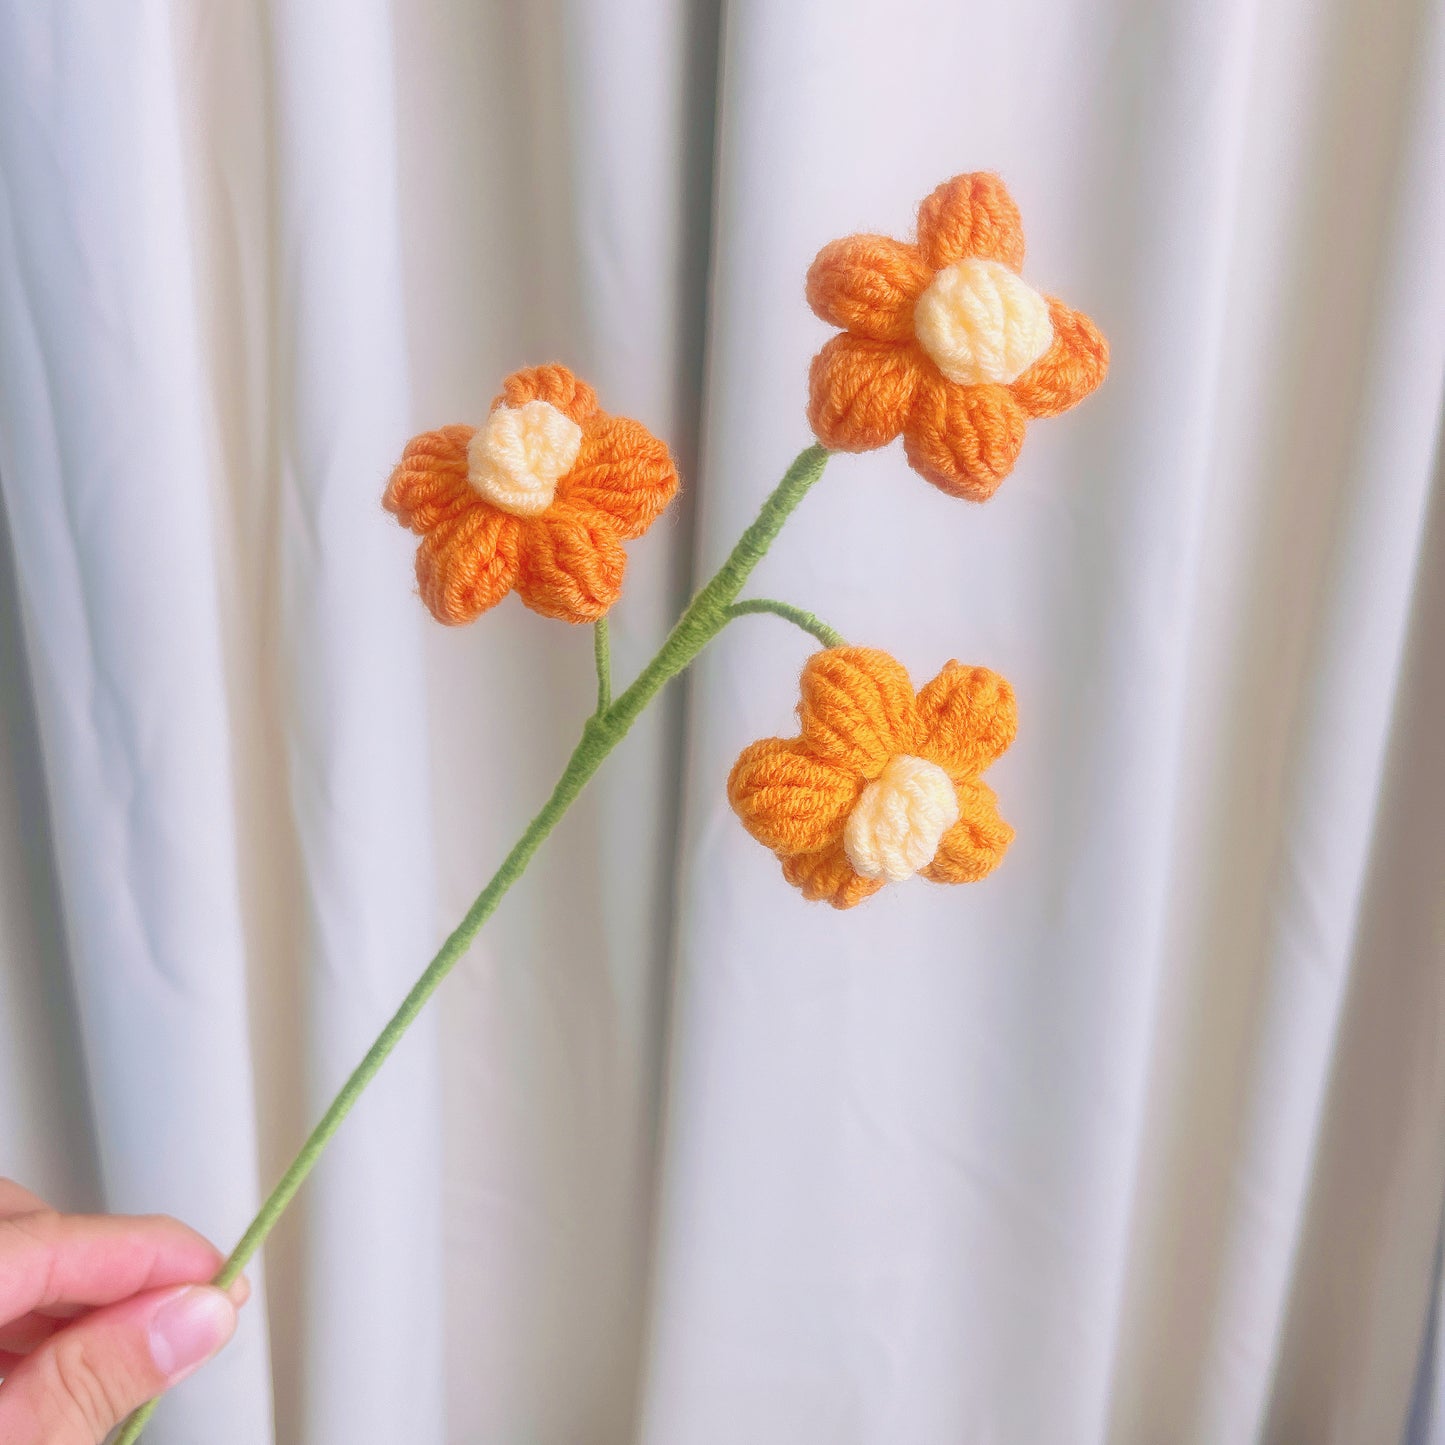 Sunshine Serenade: Handgefertigter gelber Blütenstrauß – strahlende Rosen, Tulpen, Puffs und Grünpflanzen